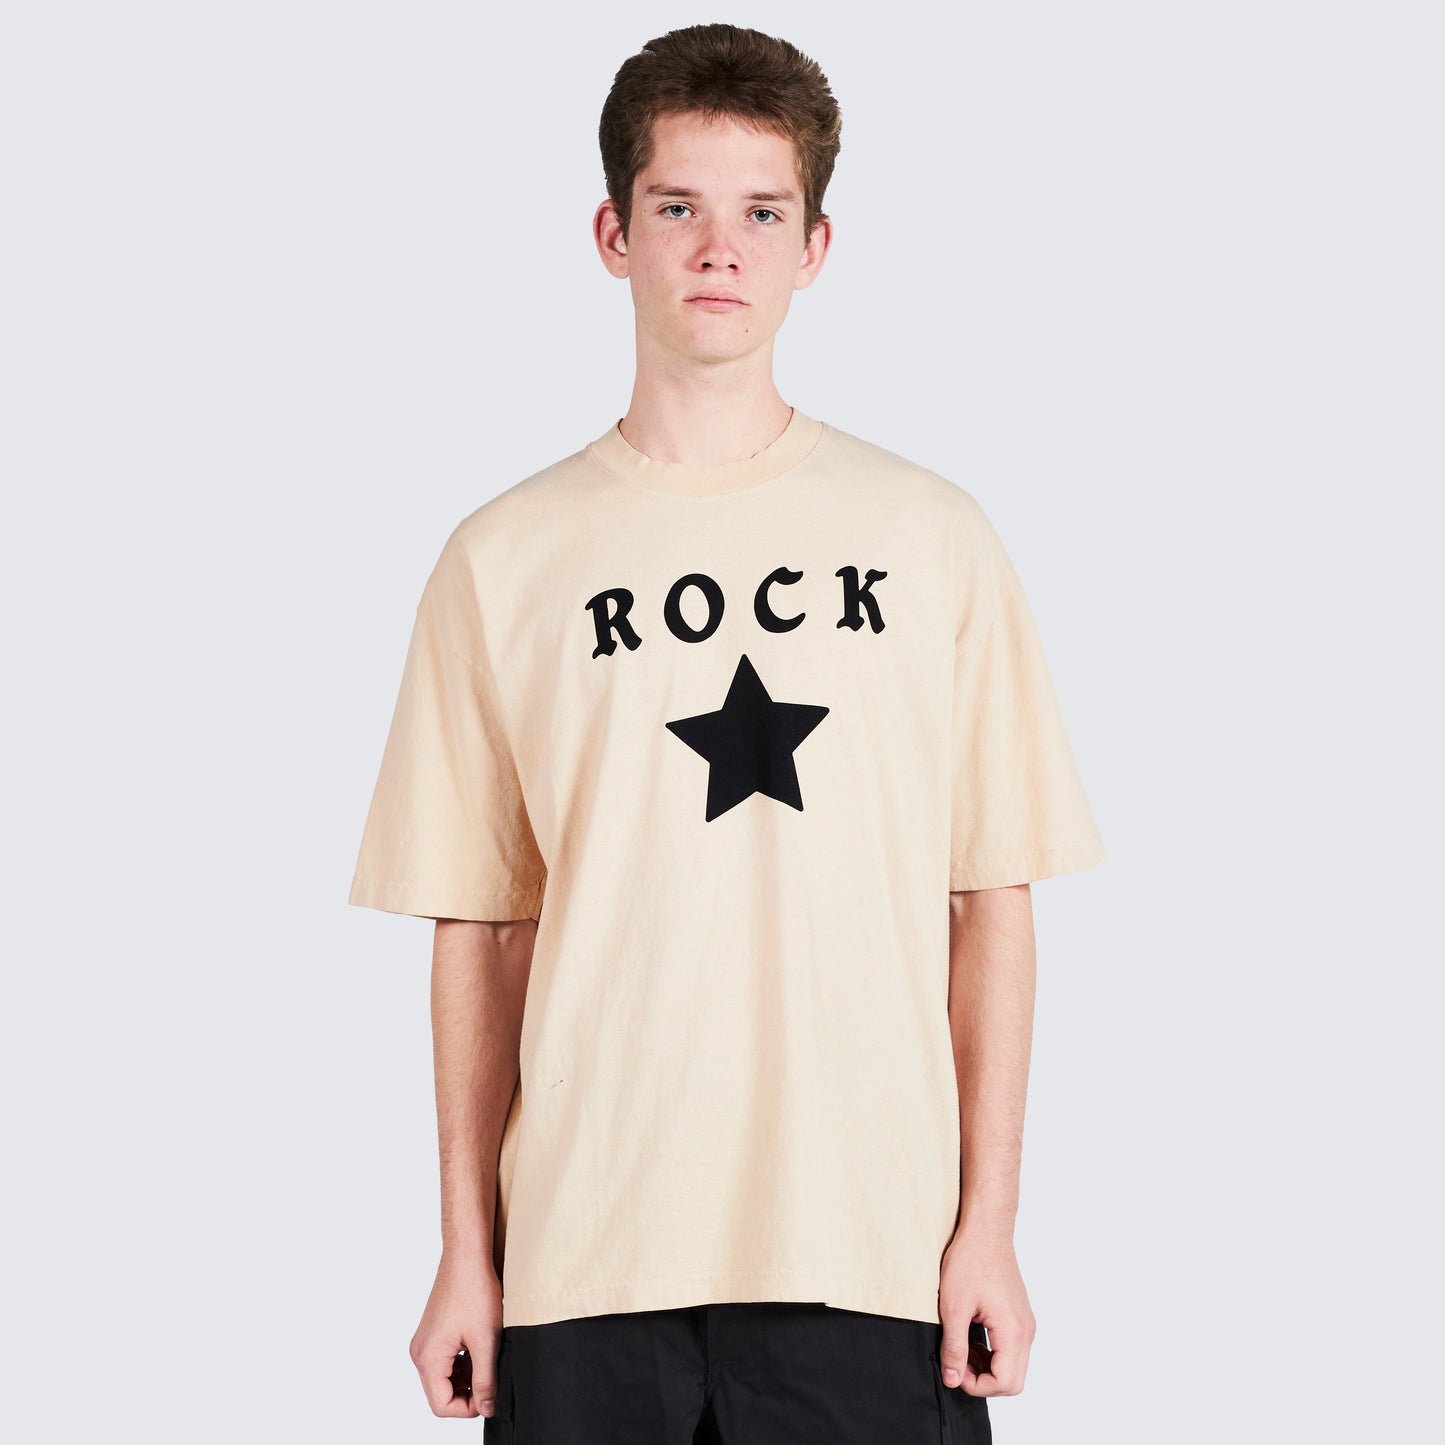 Pleasures Rockstar T-Shirt in Tan